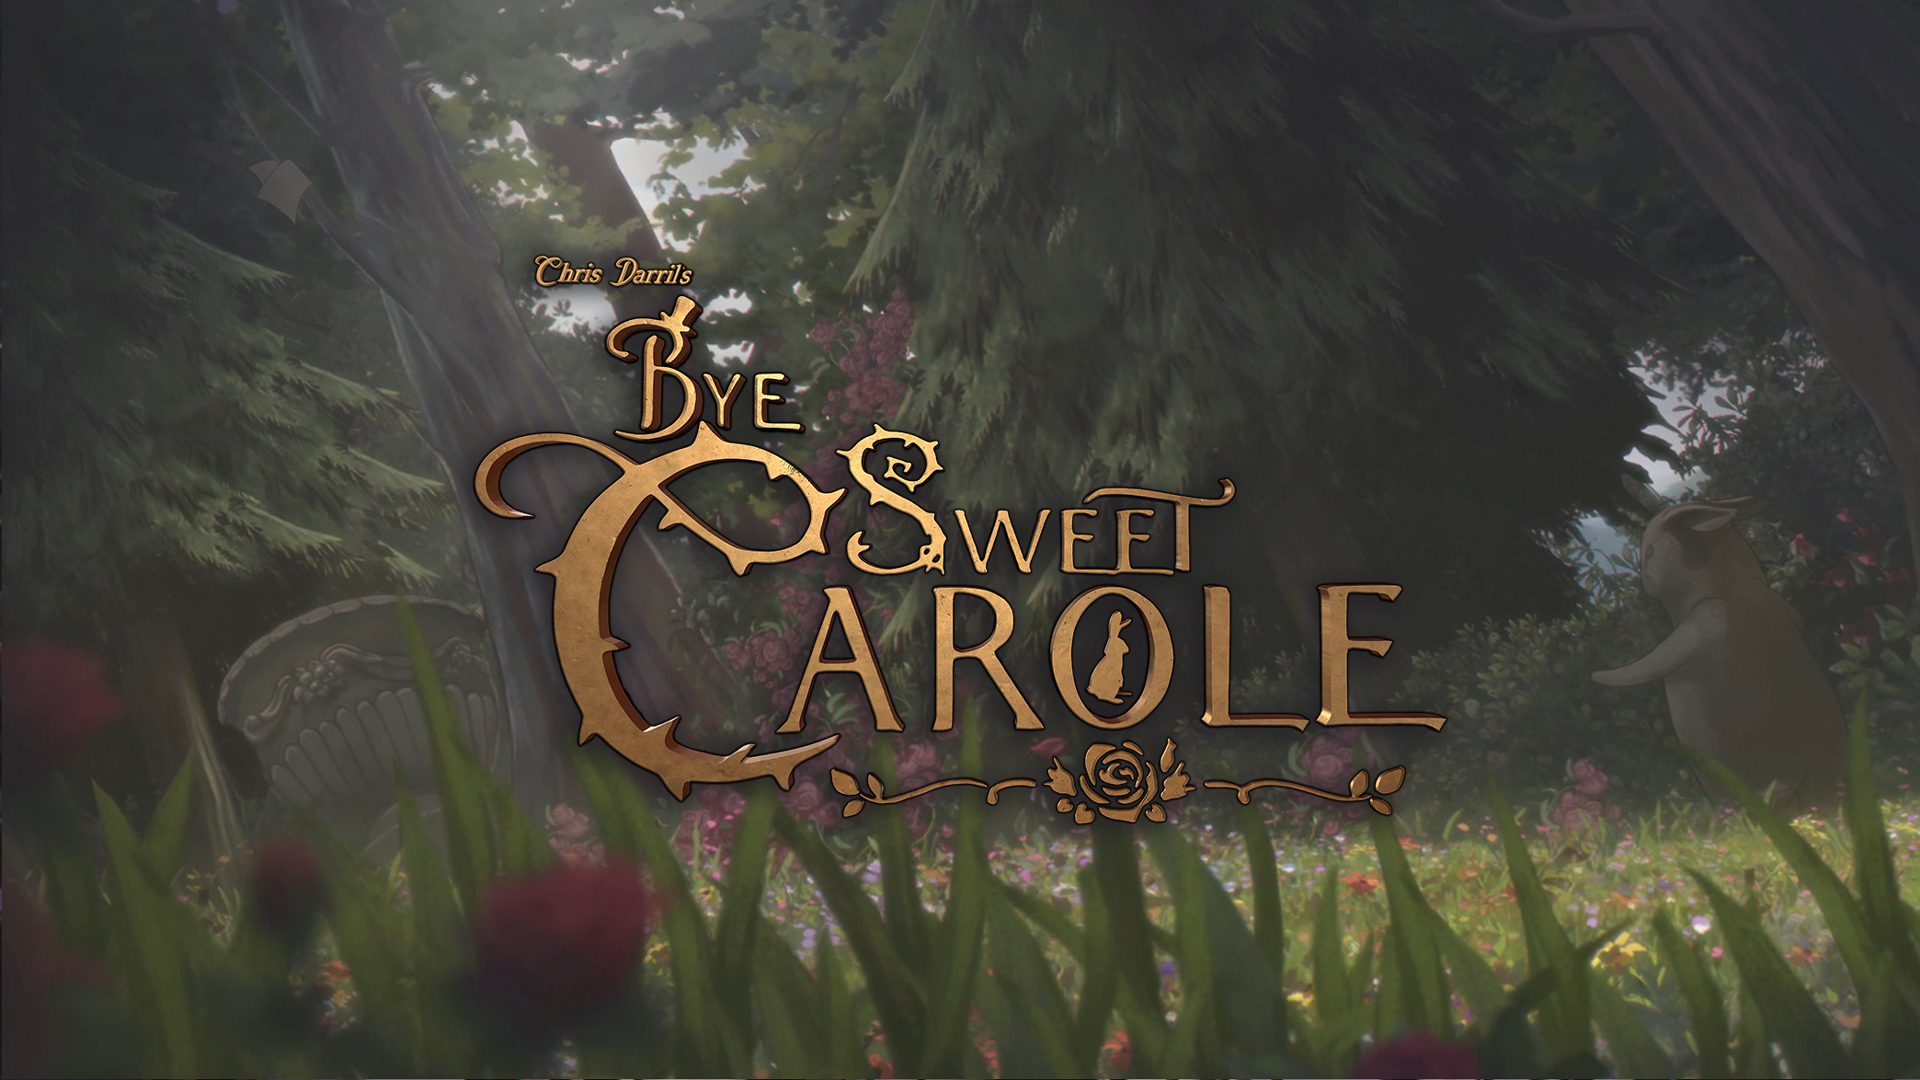 Bye Sweet Carole